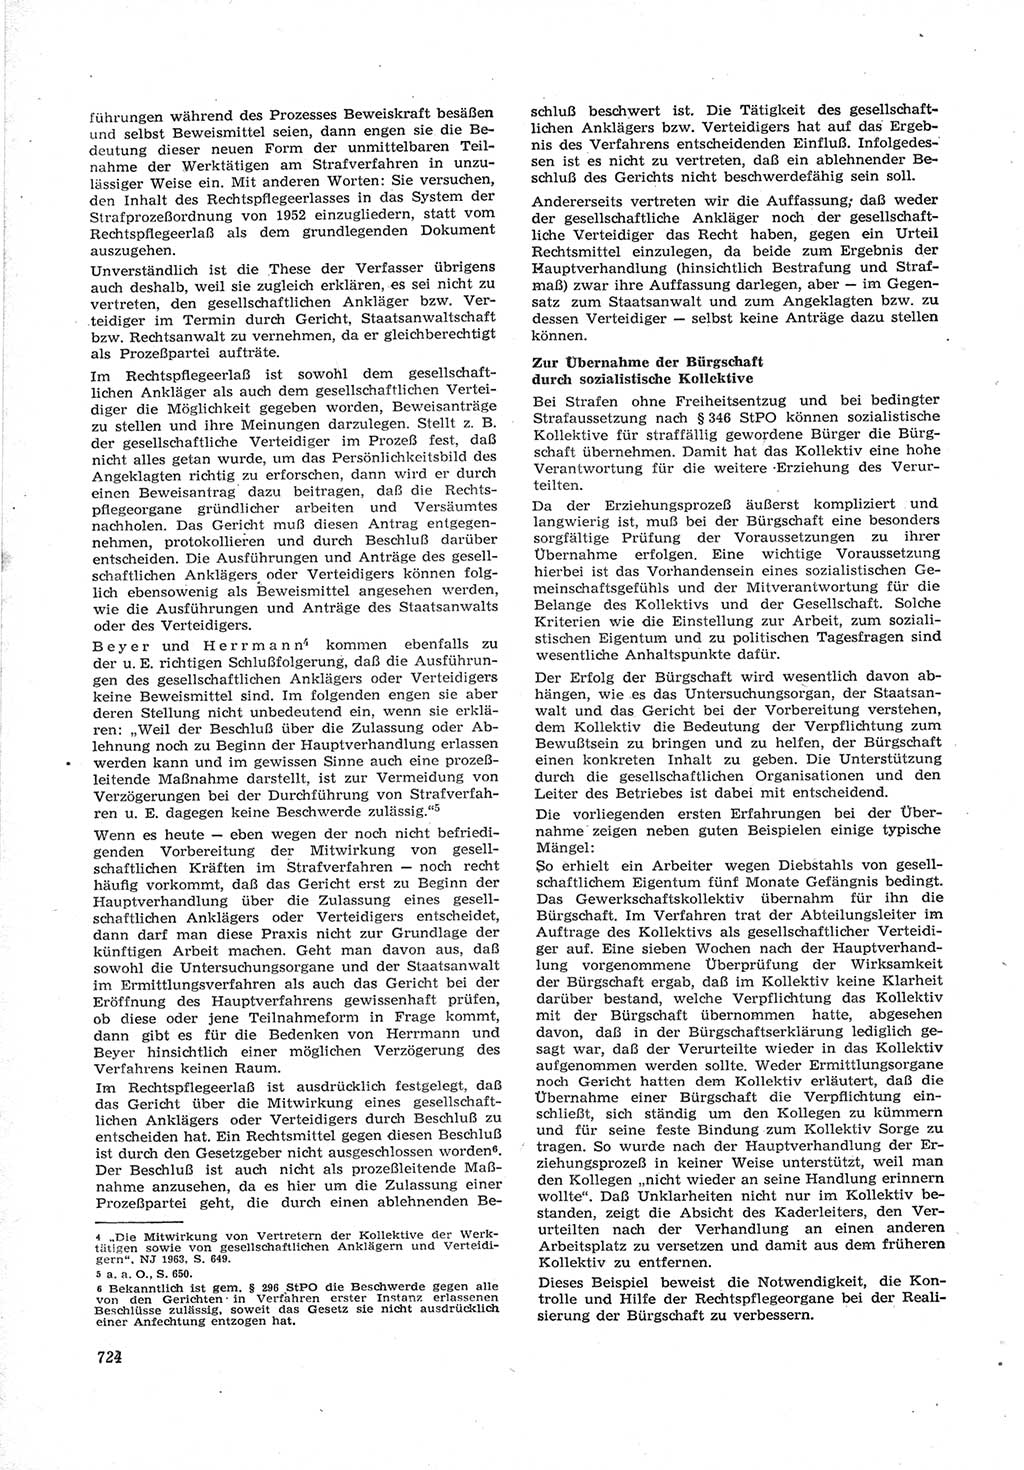 Neue Justiz (NJ), Zeitschrift für Recht und Rechtswissenschaft [Deutsche Demokratische Republik (DDR)], 17. Jahrgang 1963, Seite 724 (NJ DDR 1963, S. 724)